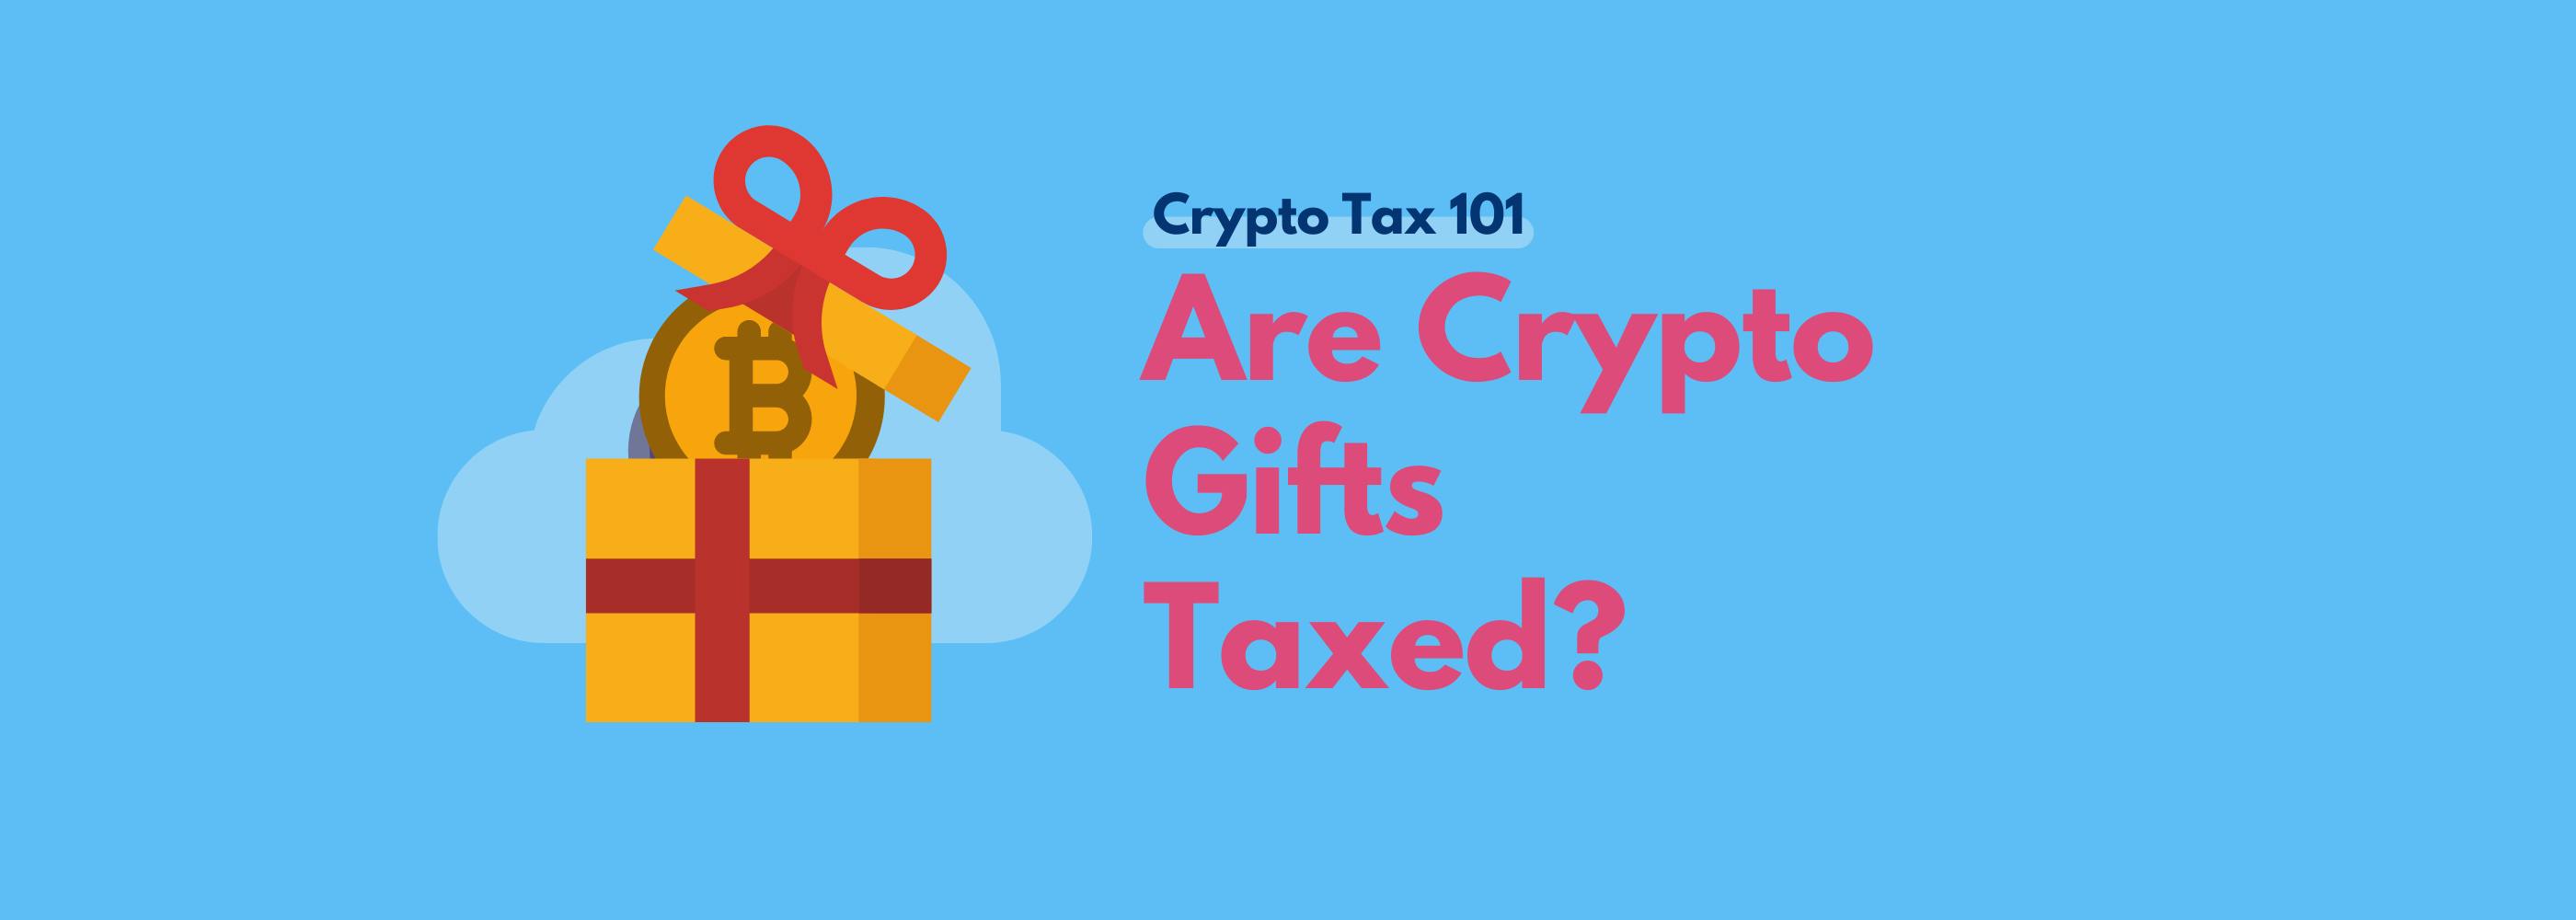 Crypto gift tax